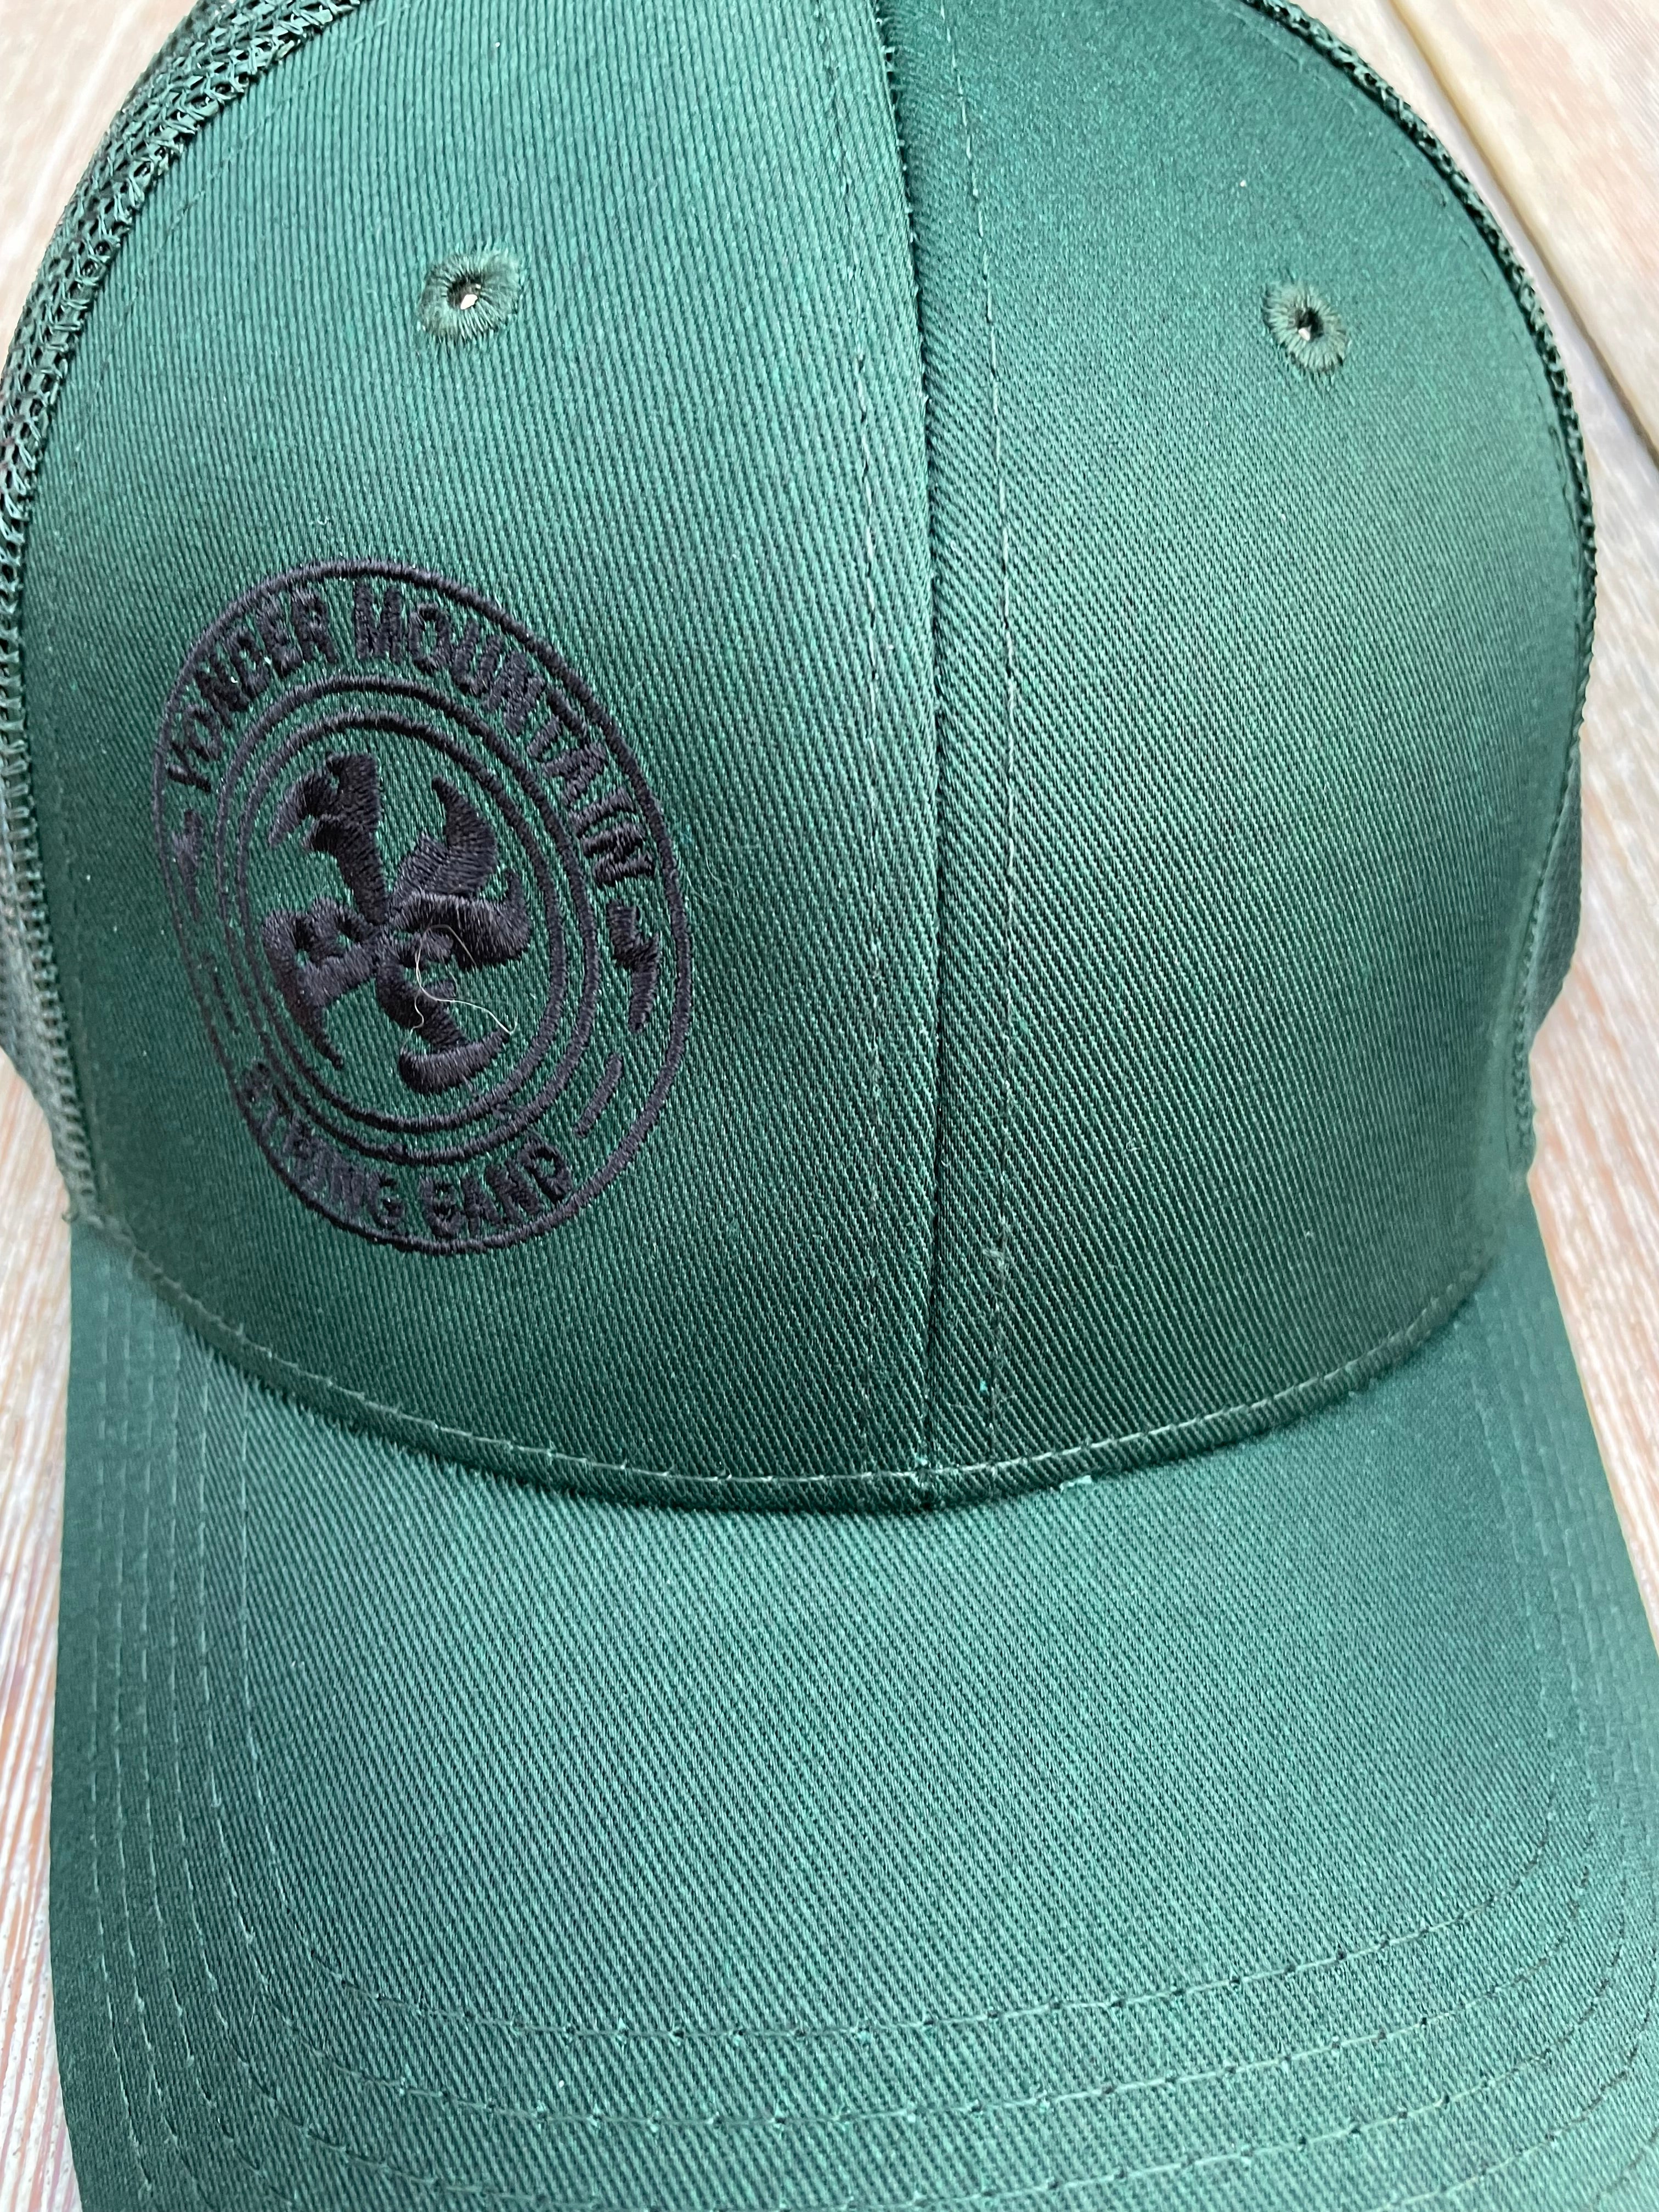 Augustine Logo - Trucker Hat